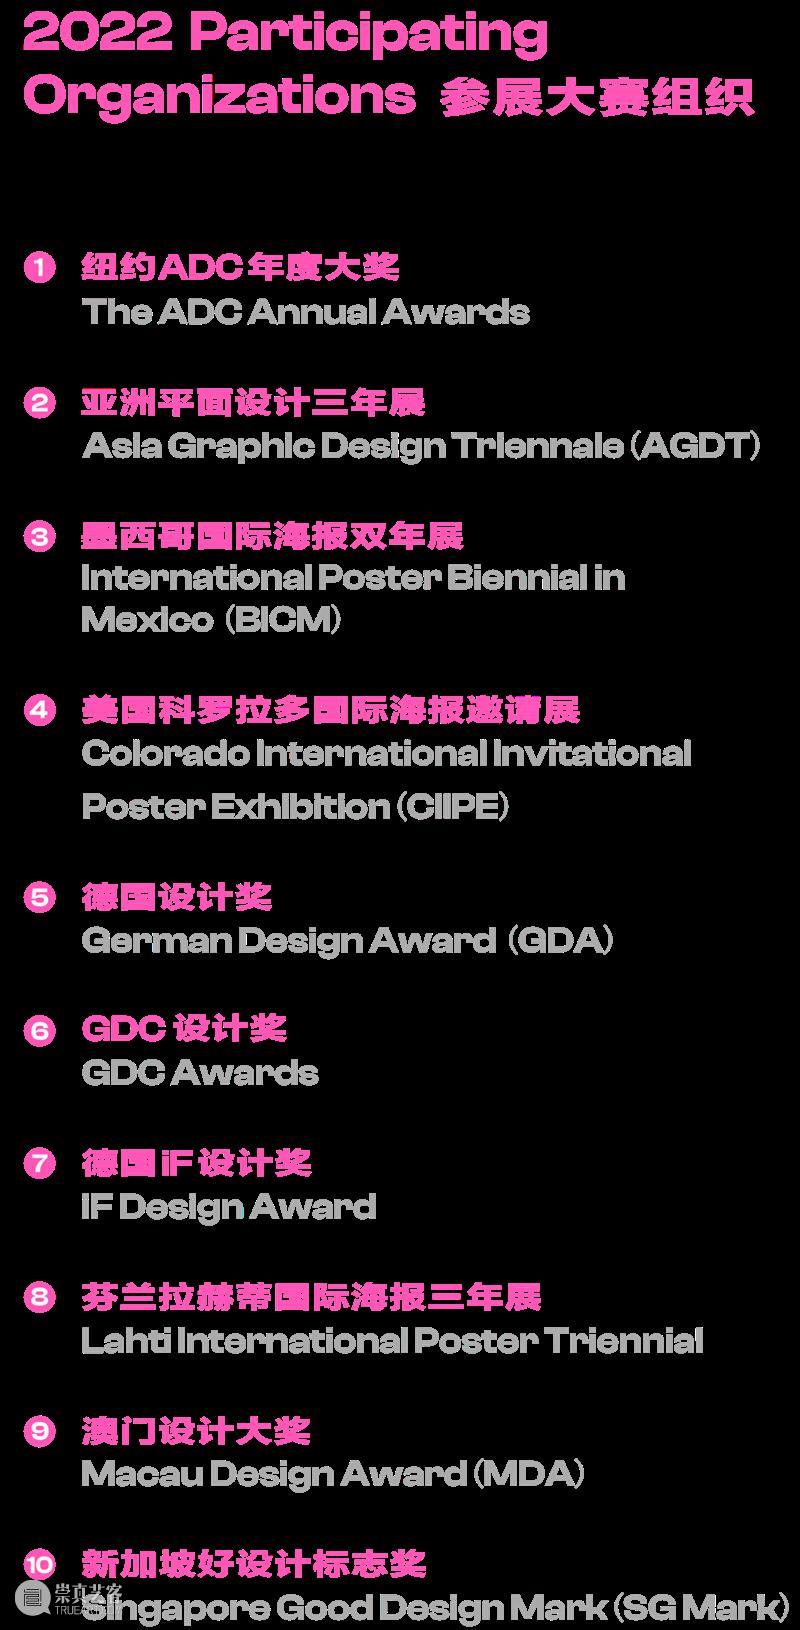 活动｜“上海设计10×10”全球大奖展设计领袖论坛在线举行 崇真艺客